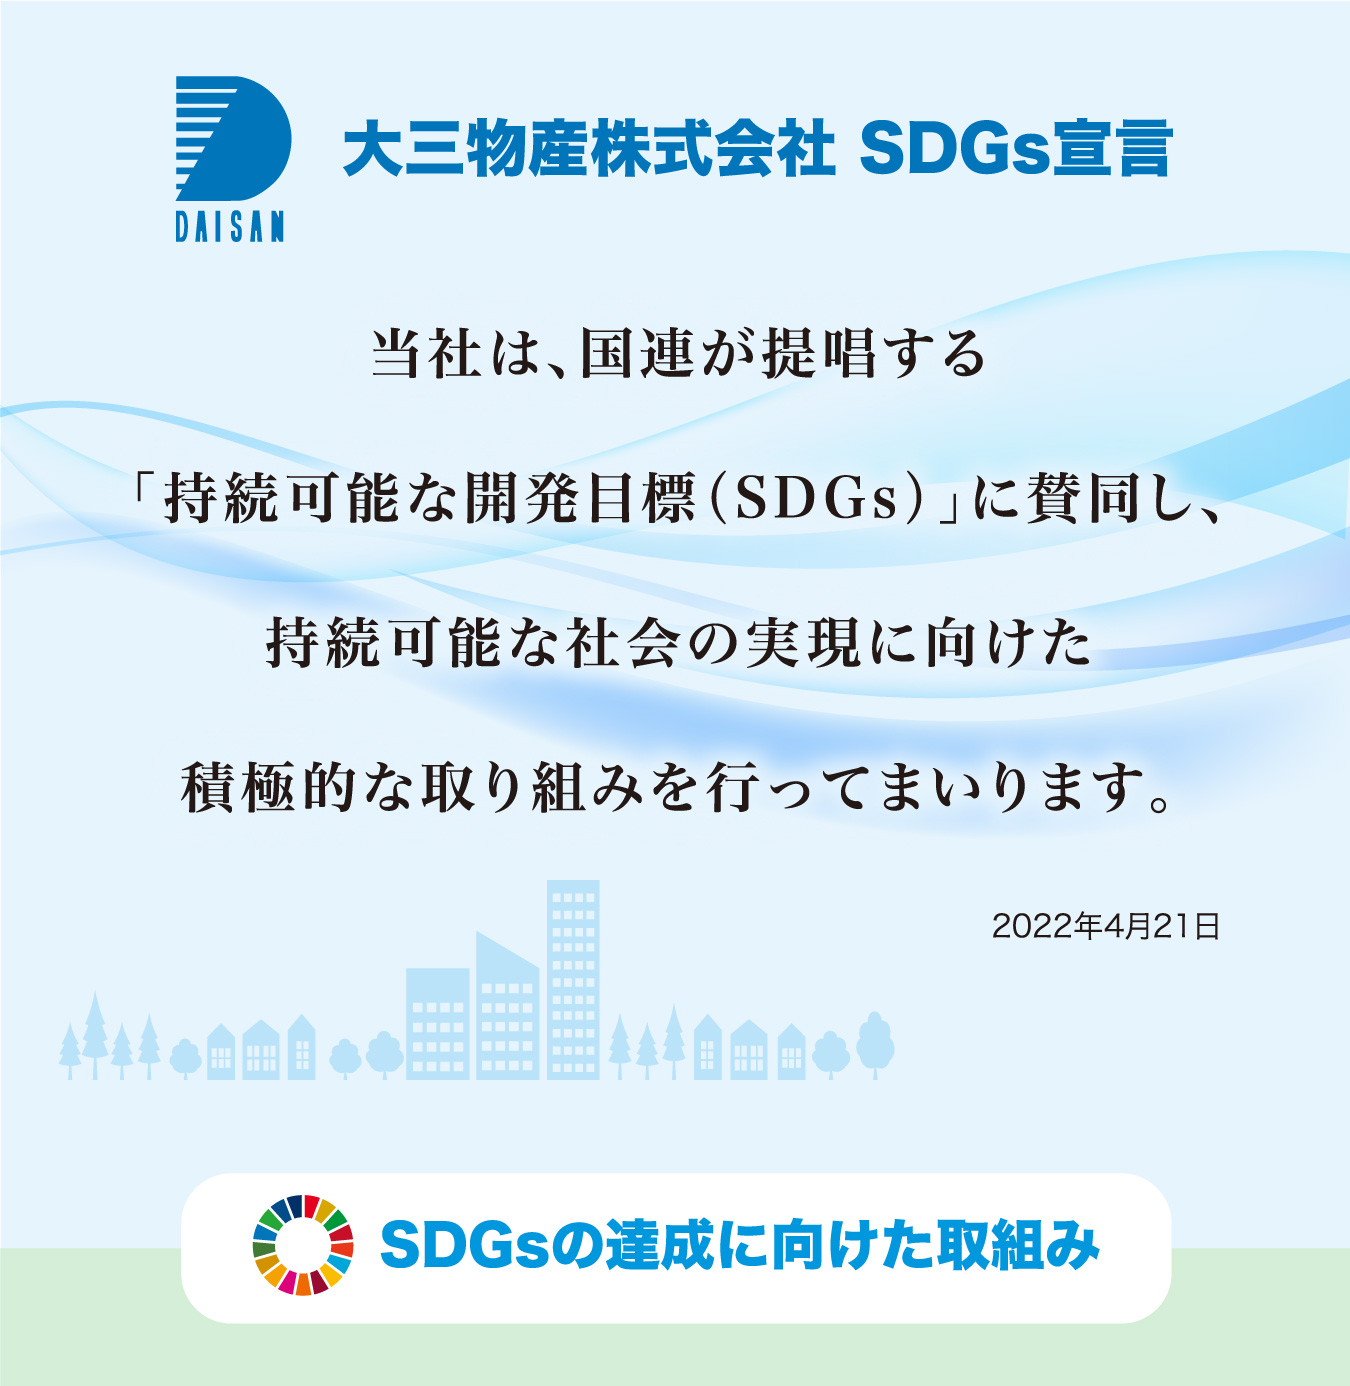 大三物産株式会社 SDGs宣言 当社は、国連が提唱する「持続可能な開発目標（SDGs）」に賛同し、持続可能な社会の実現に向けた積極的な取り組みを行ってまいります。2022年4月21日 SDGsの達成に向けた取組み